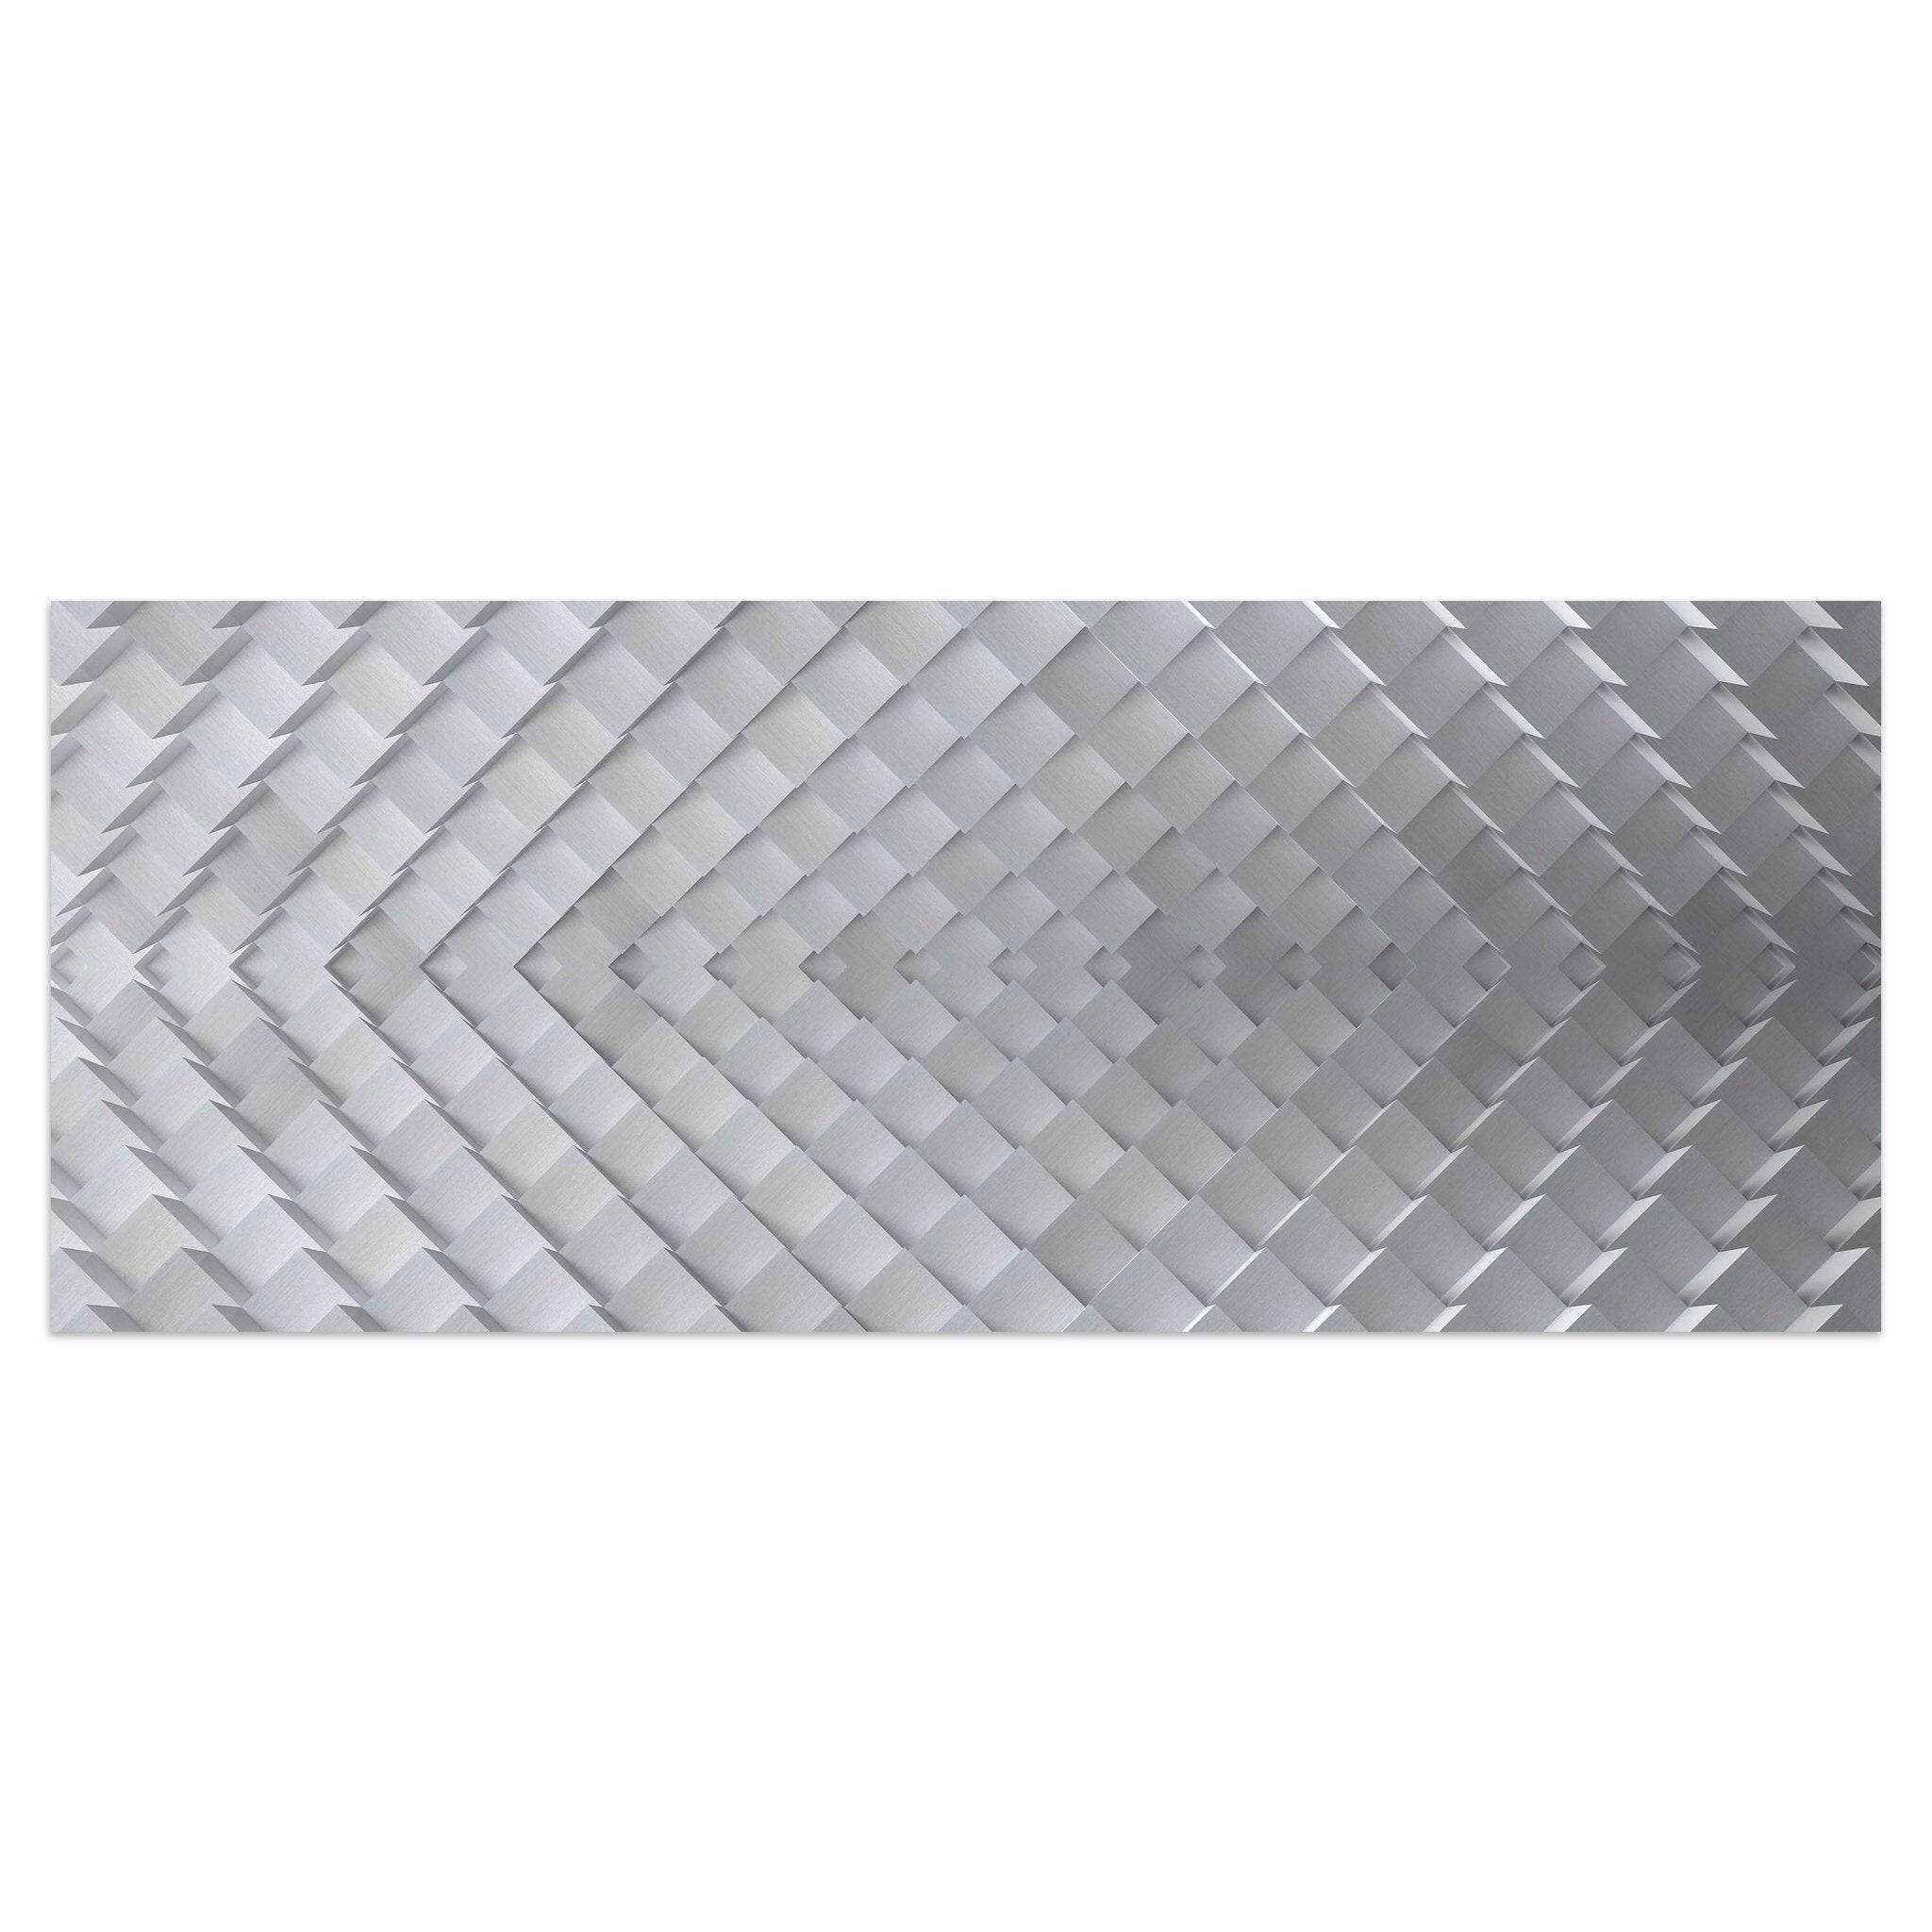 Leinwandbild Eine abstrakte Metallkulisse M0769 kaufen - Bild 1